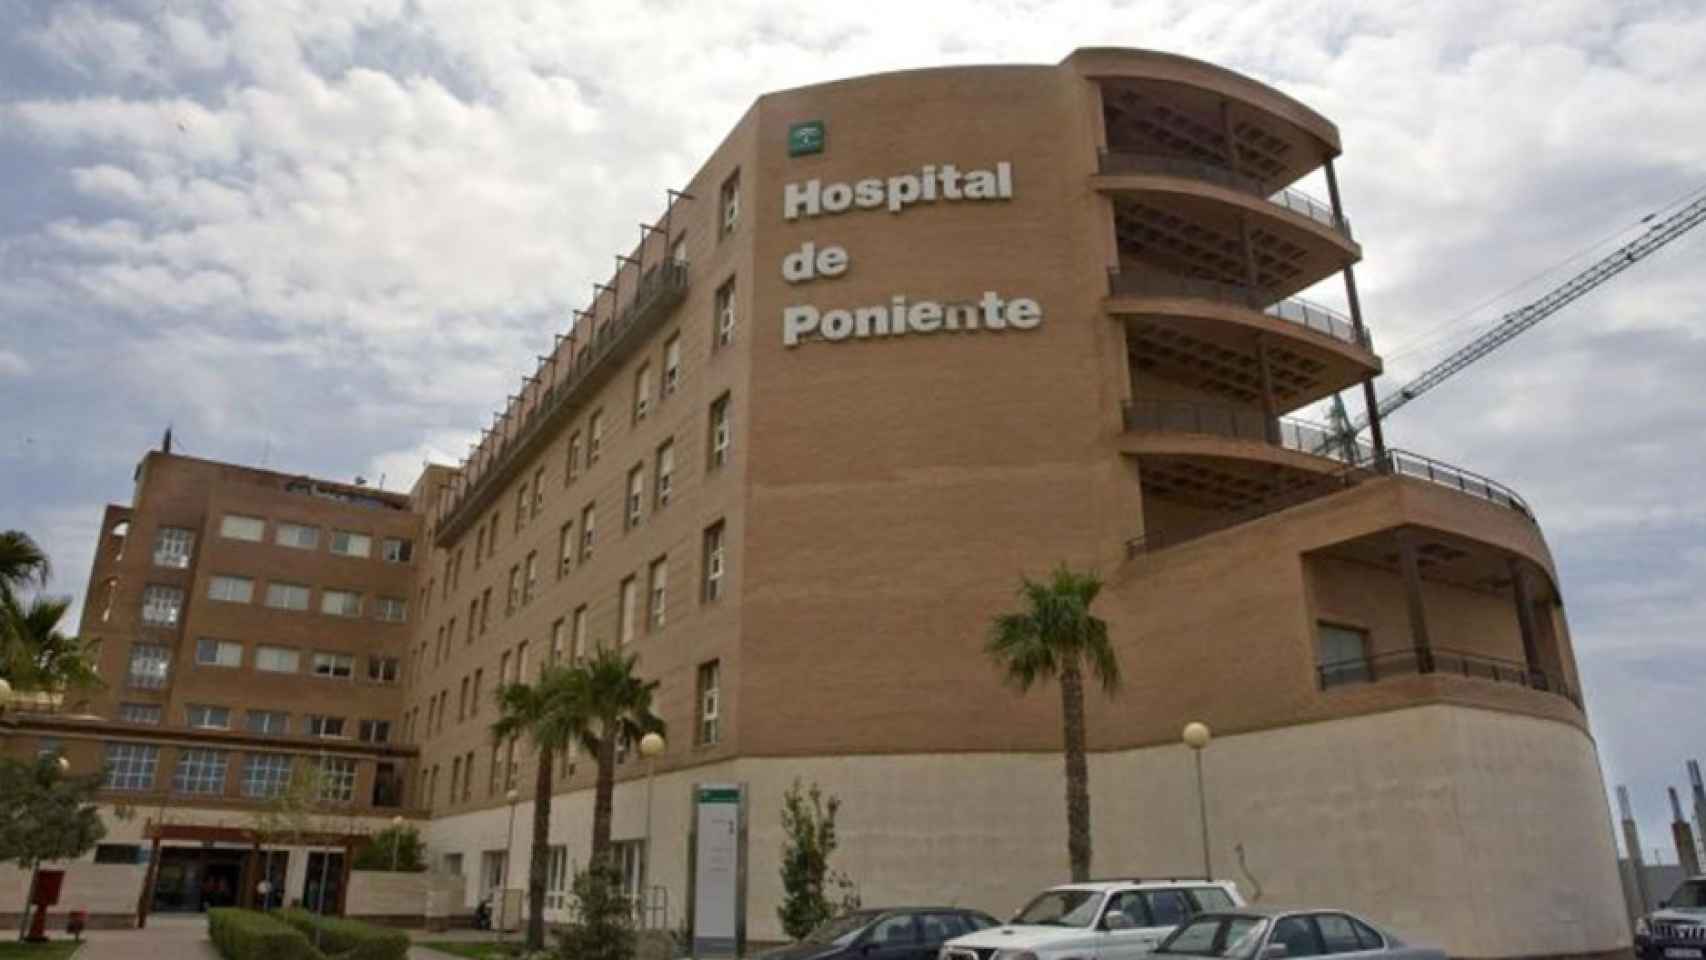 El Hospital Universitario Poniente donde trabaja como administrativo José María Bisbal está en El Ejido.